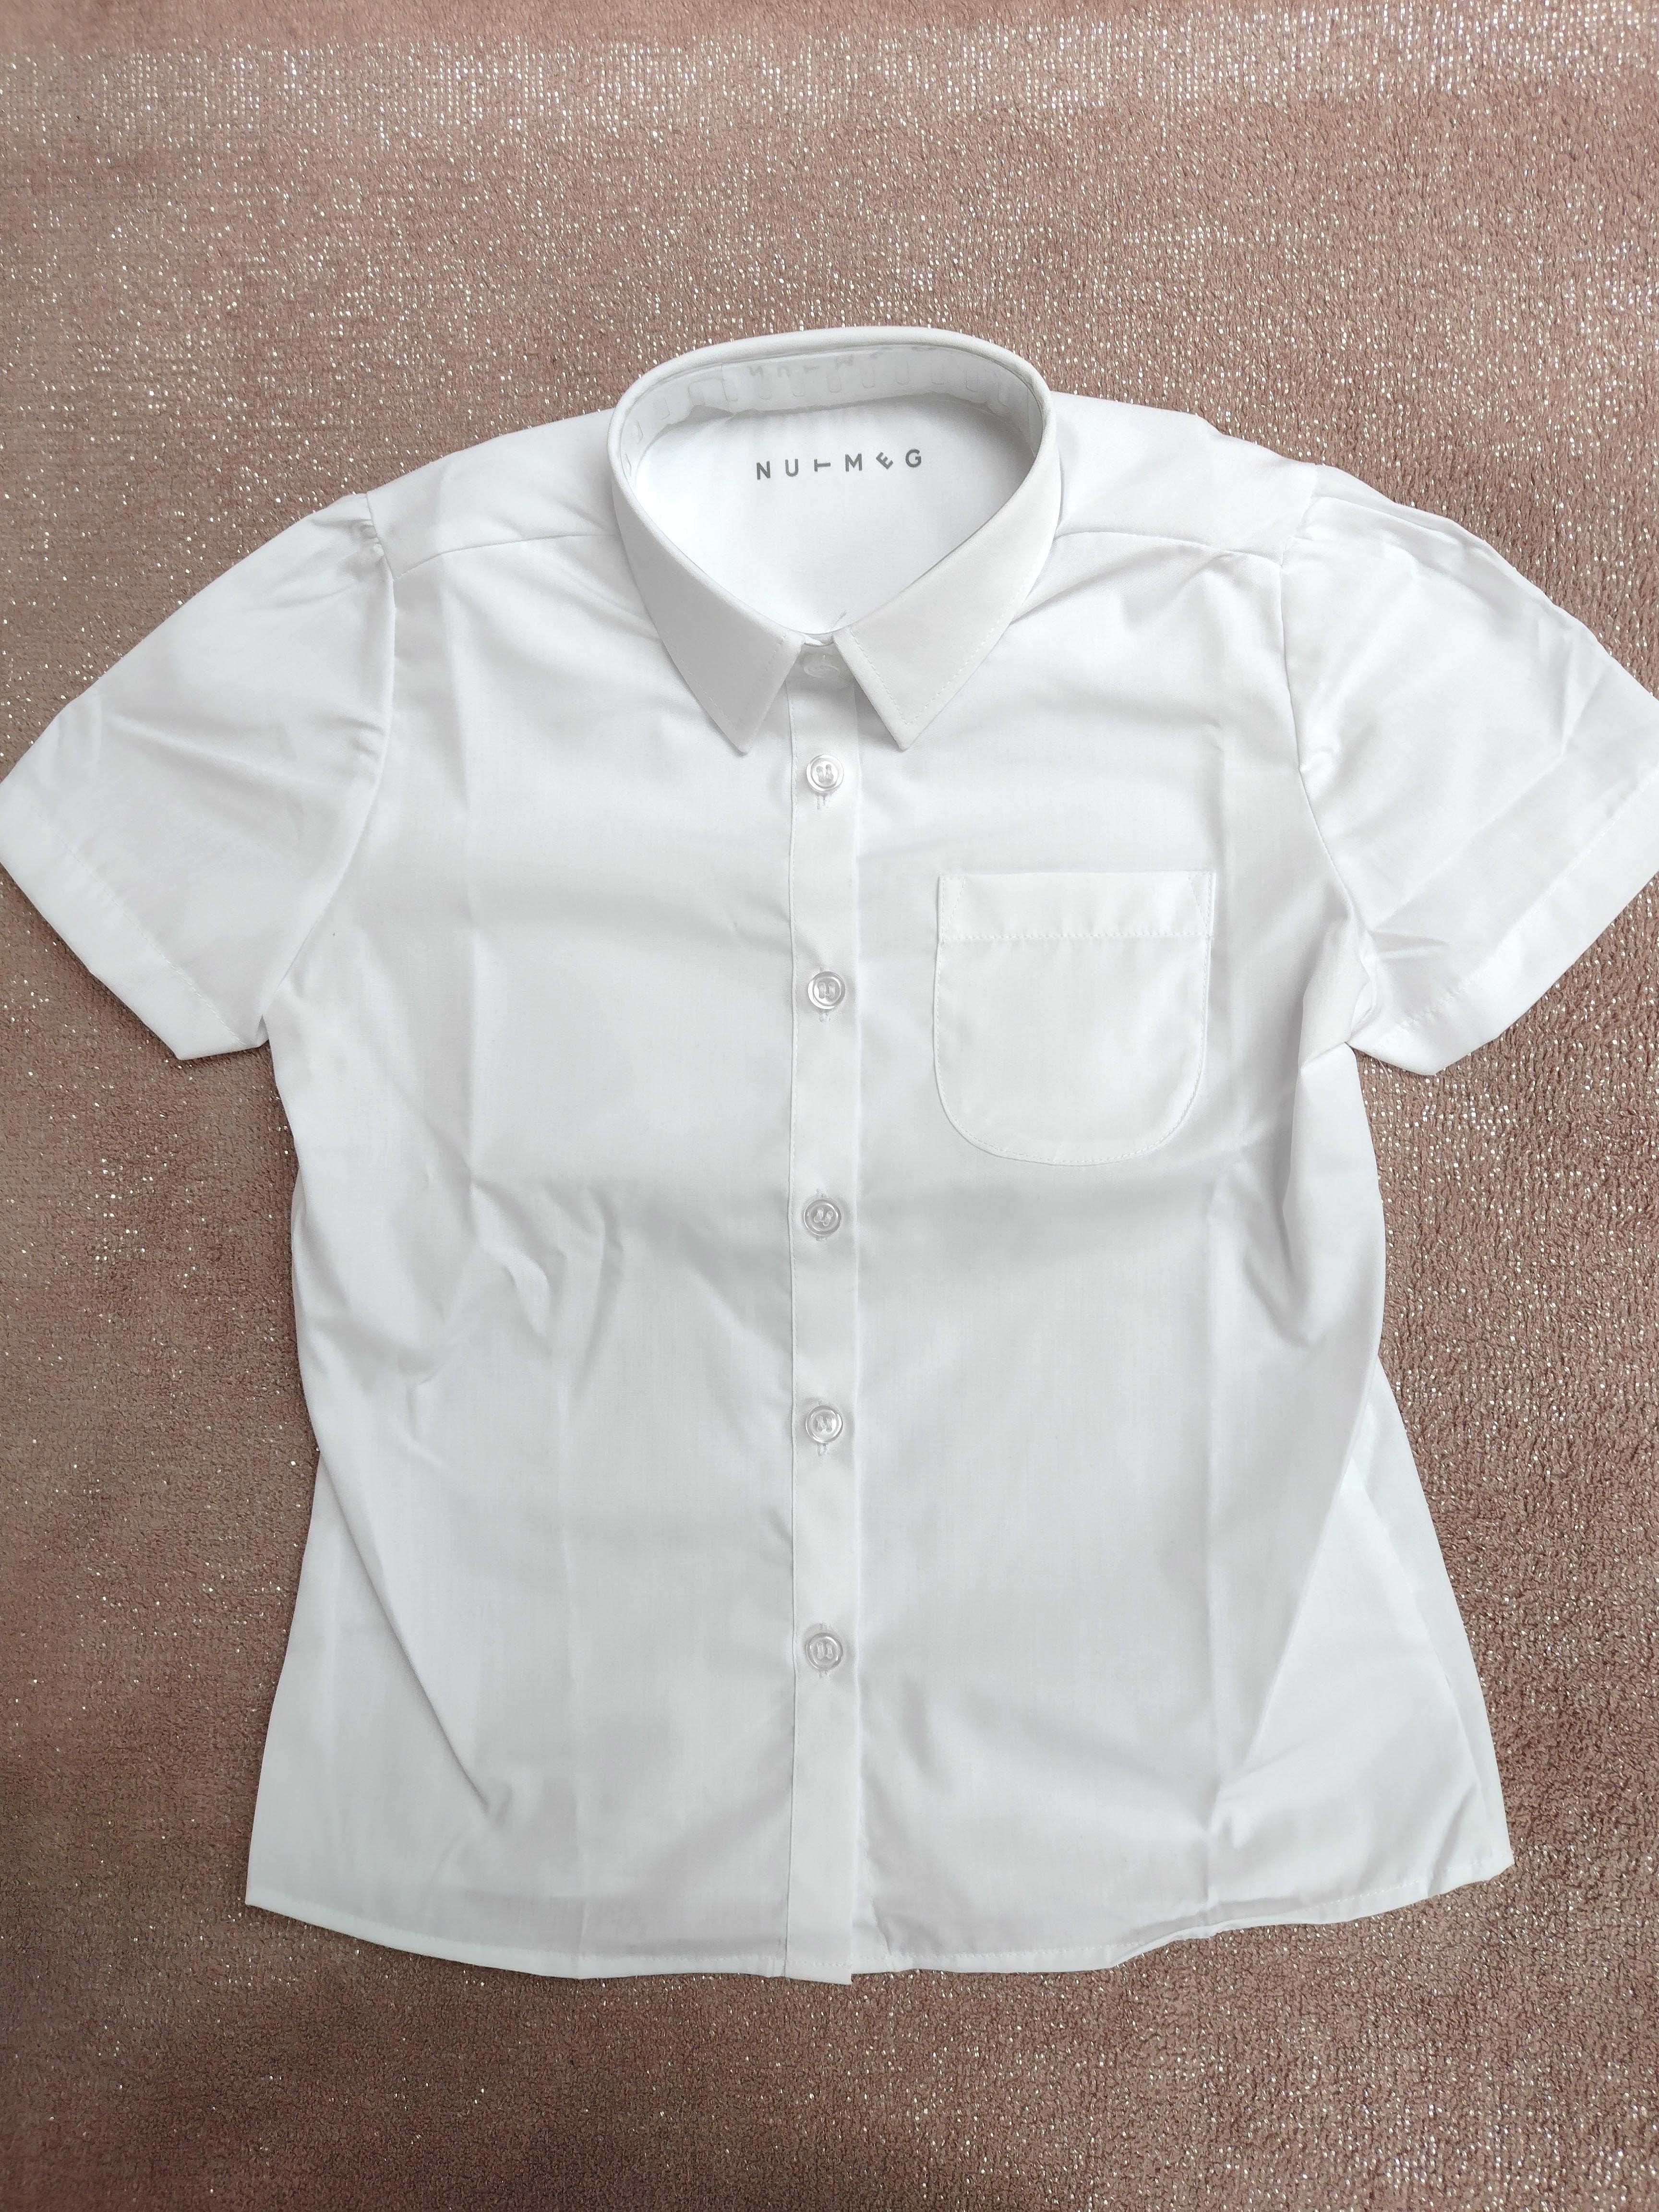 Nowa koszula dziewczęca top tshirt biała kołnierzyk krótki rękaw